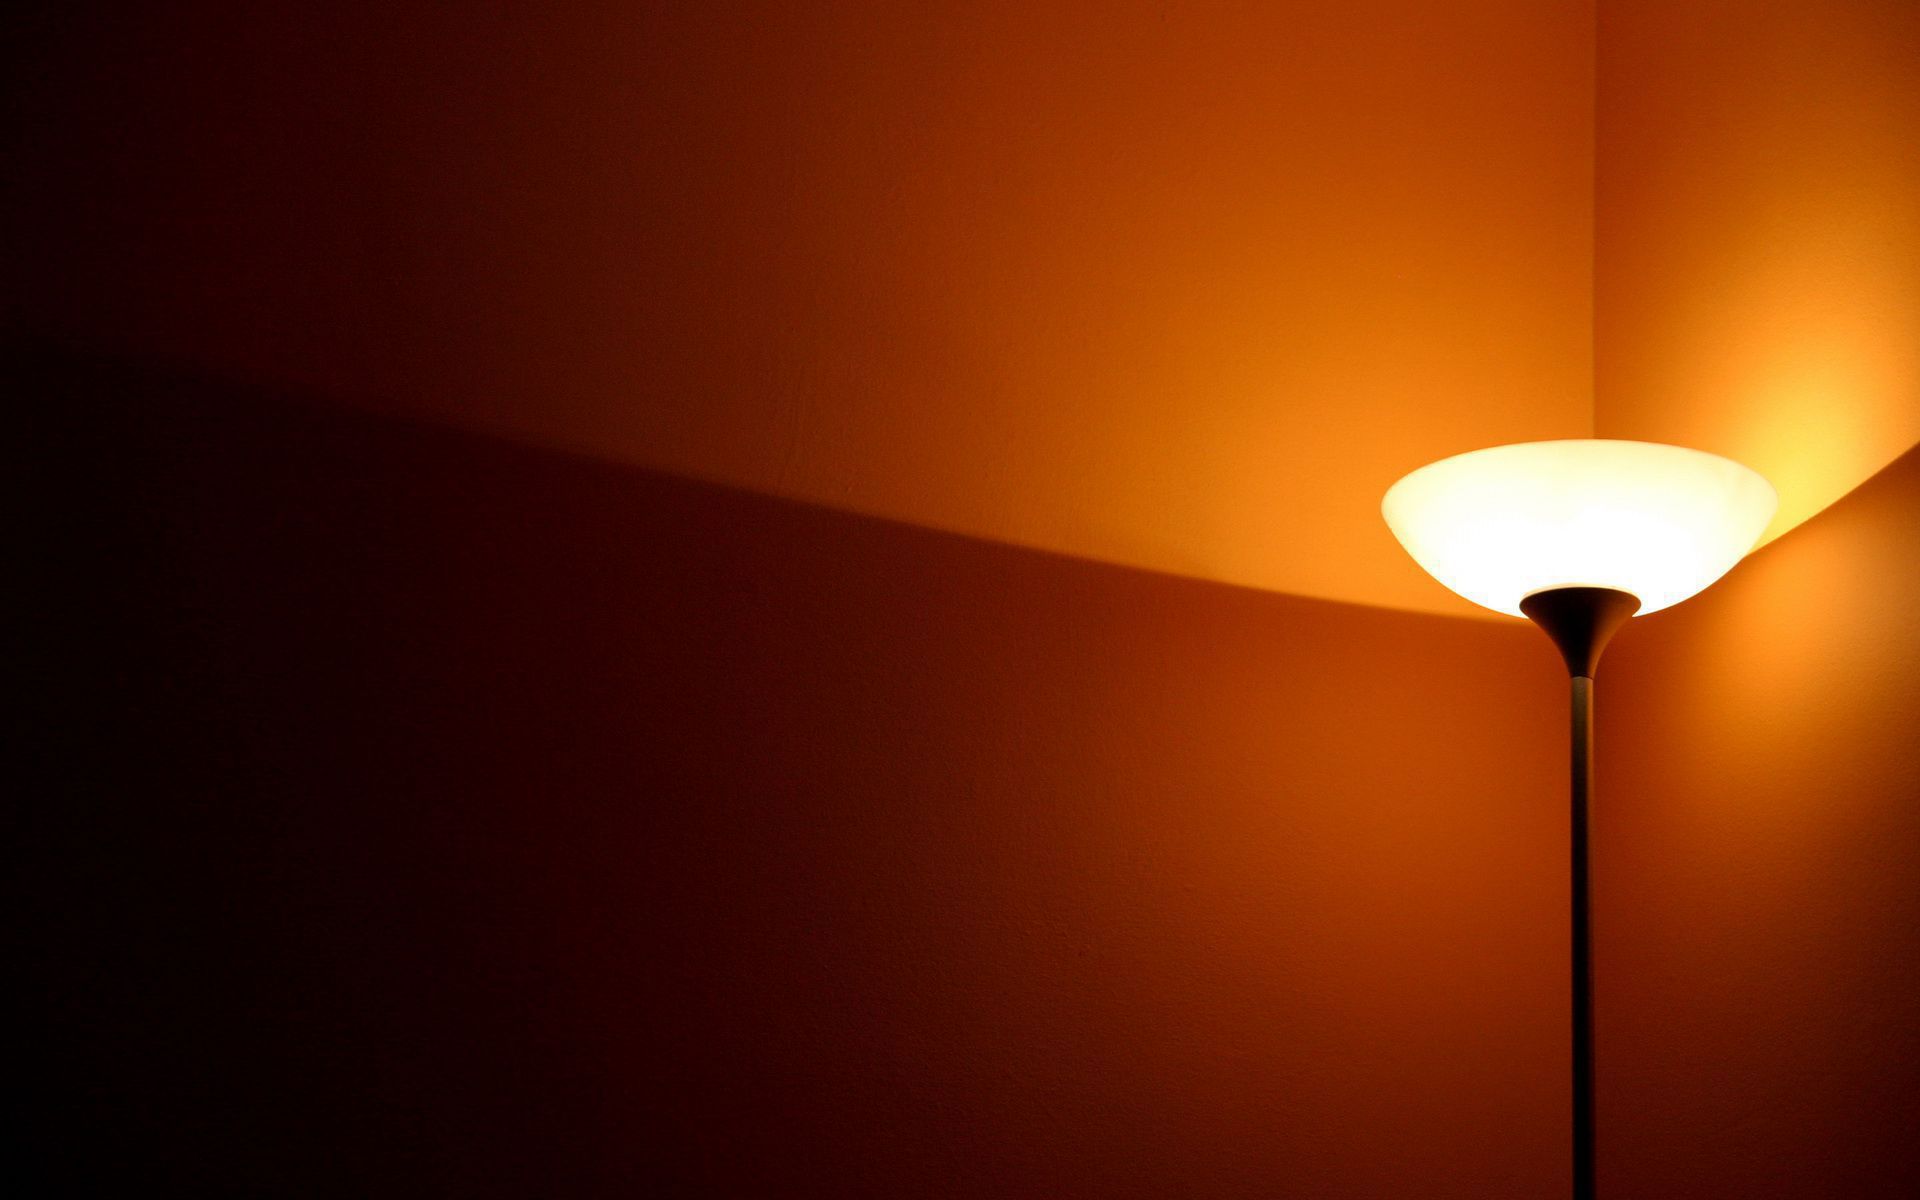 lamp wallpaper,orange,light fixture,lighting,light,lamp